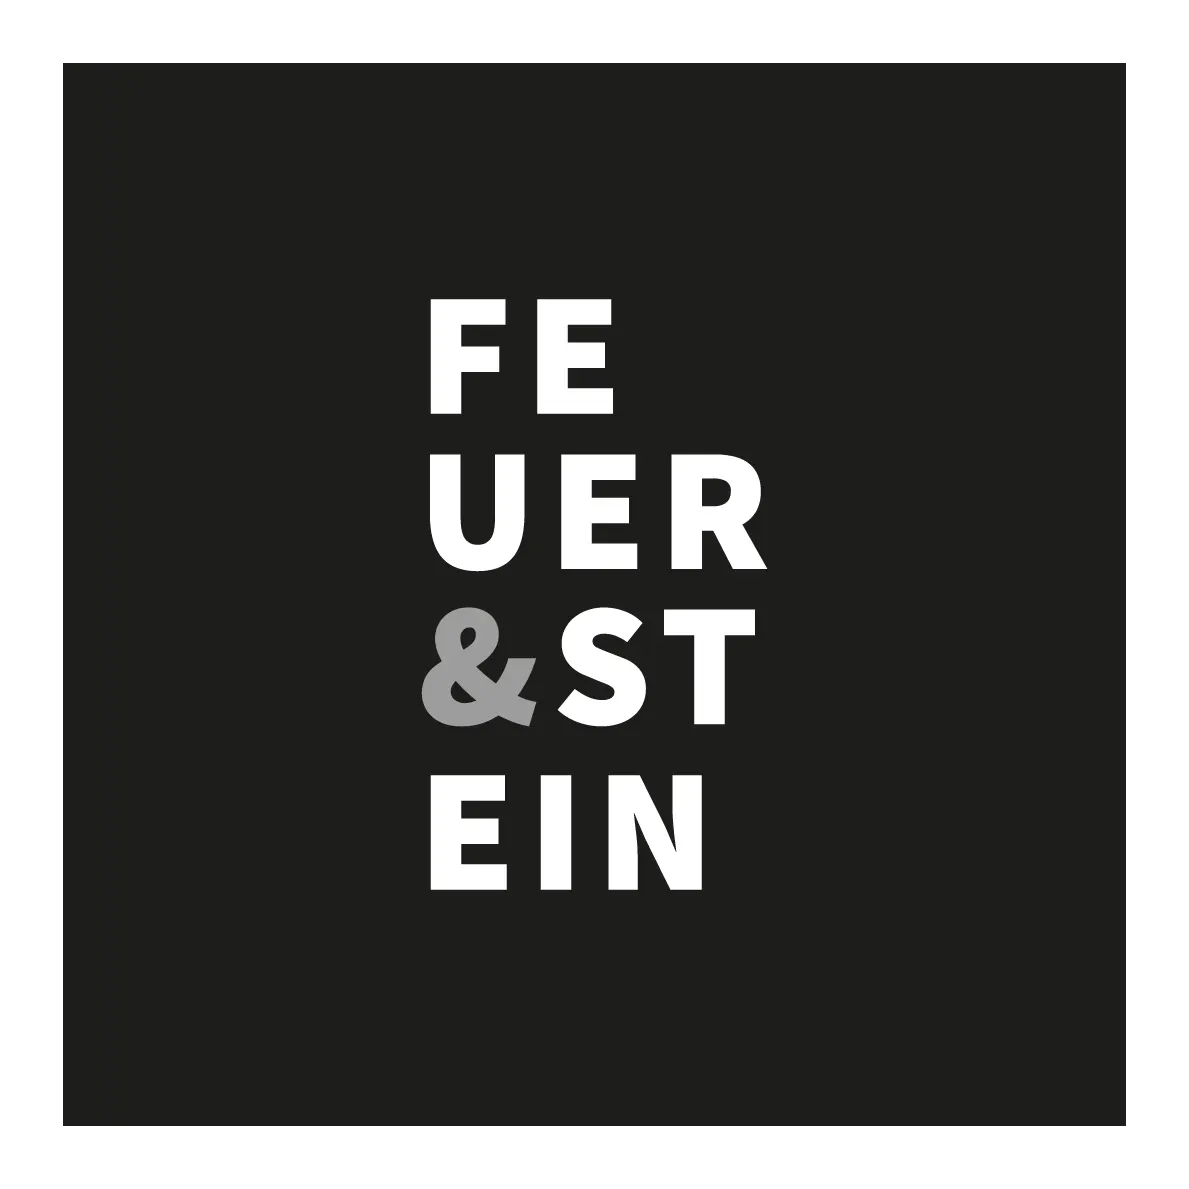 FEUER & STEIN GmbH